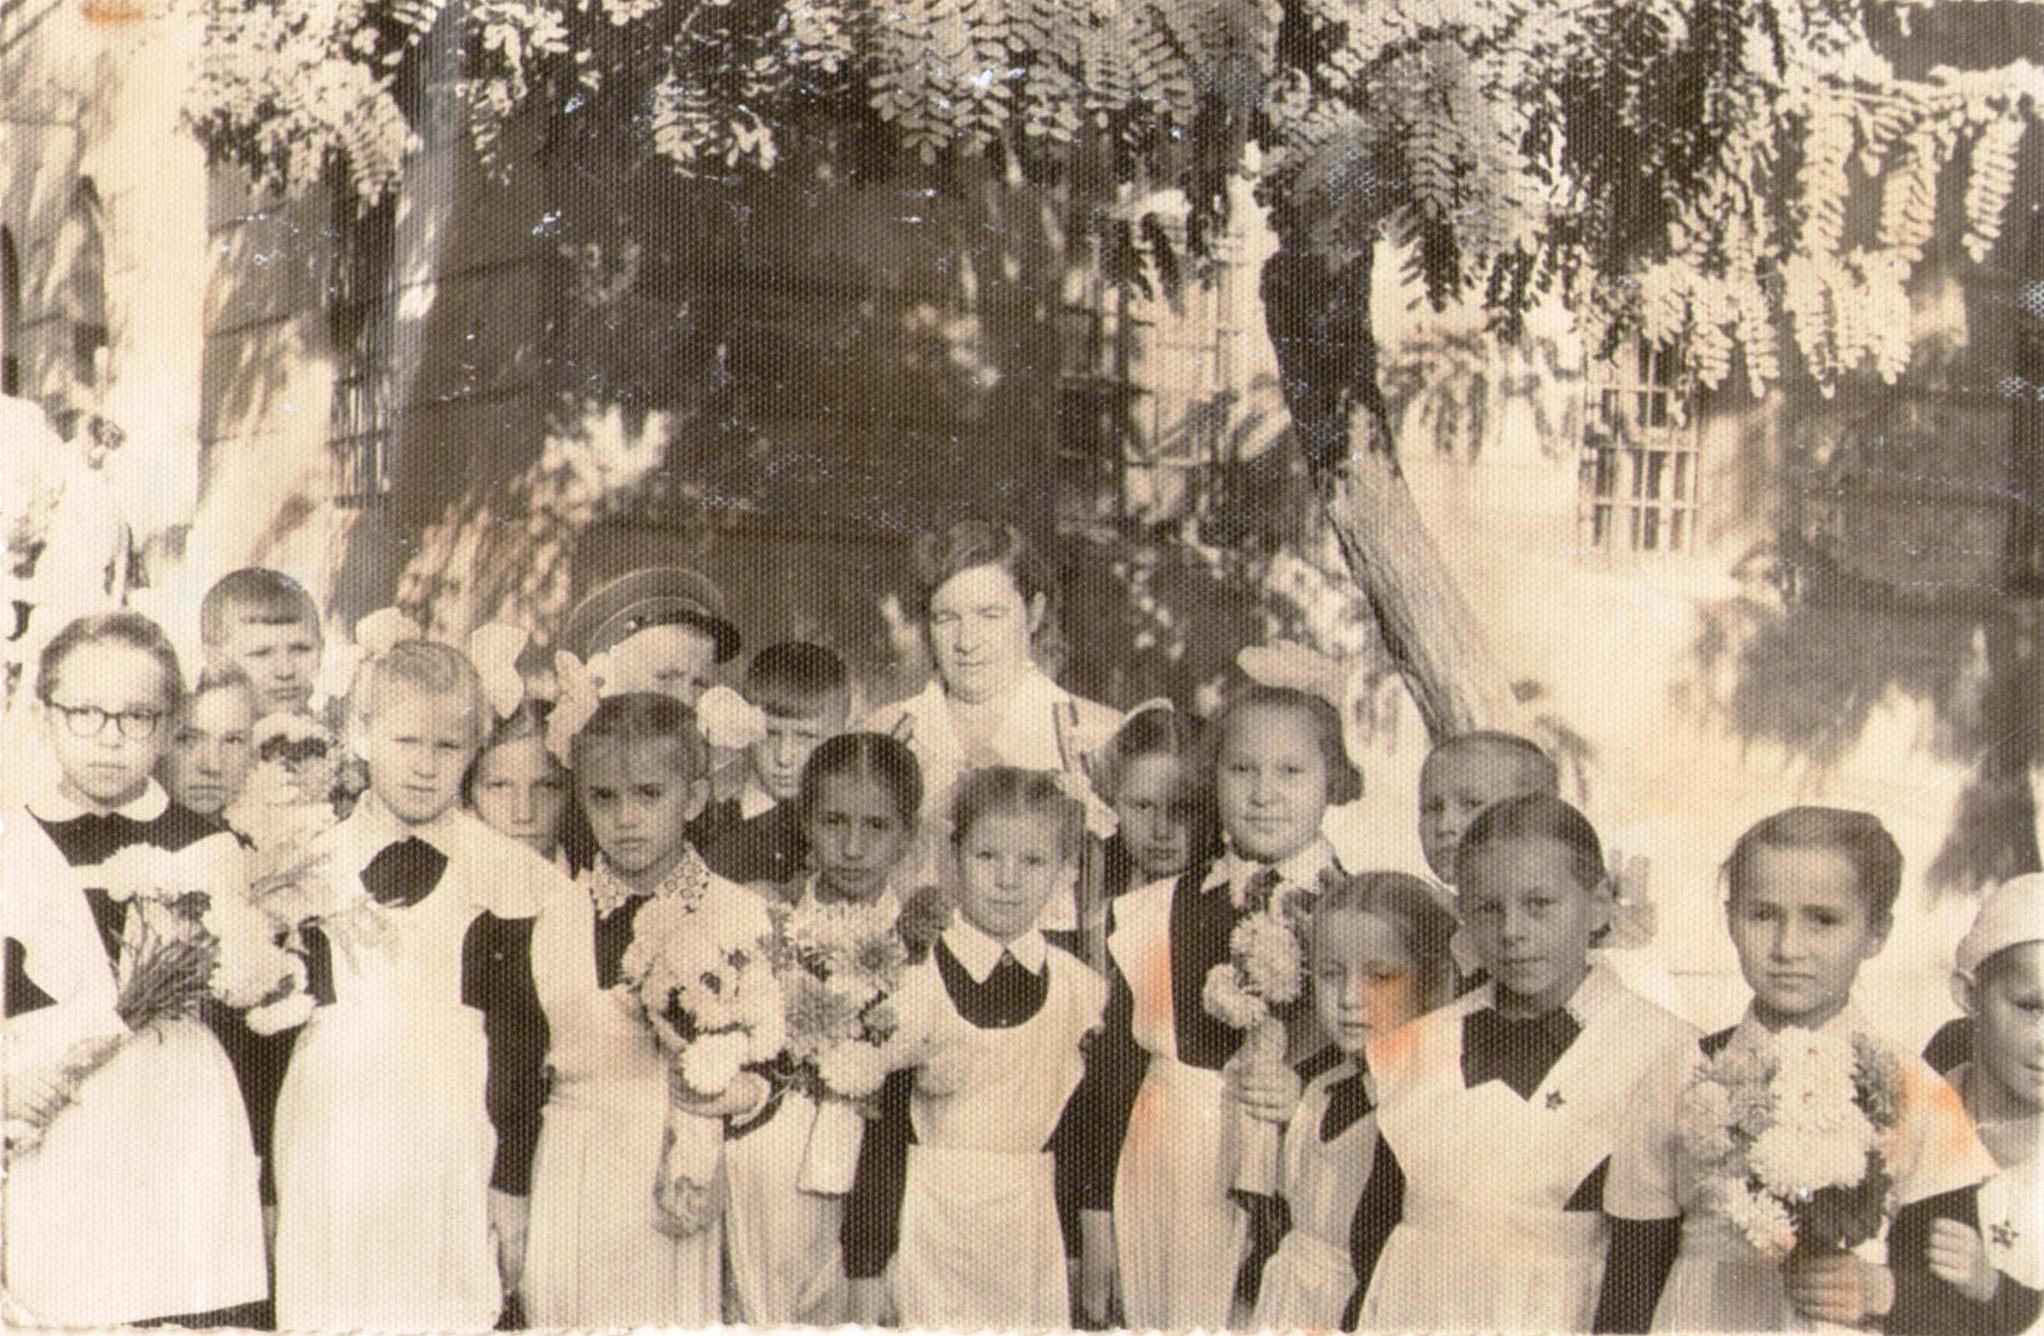 Тогаевская школа 1960 года